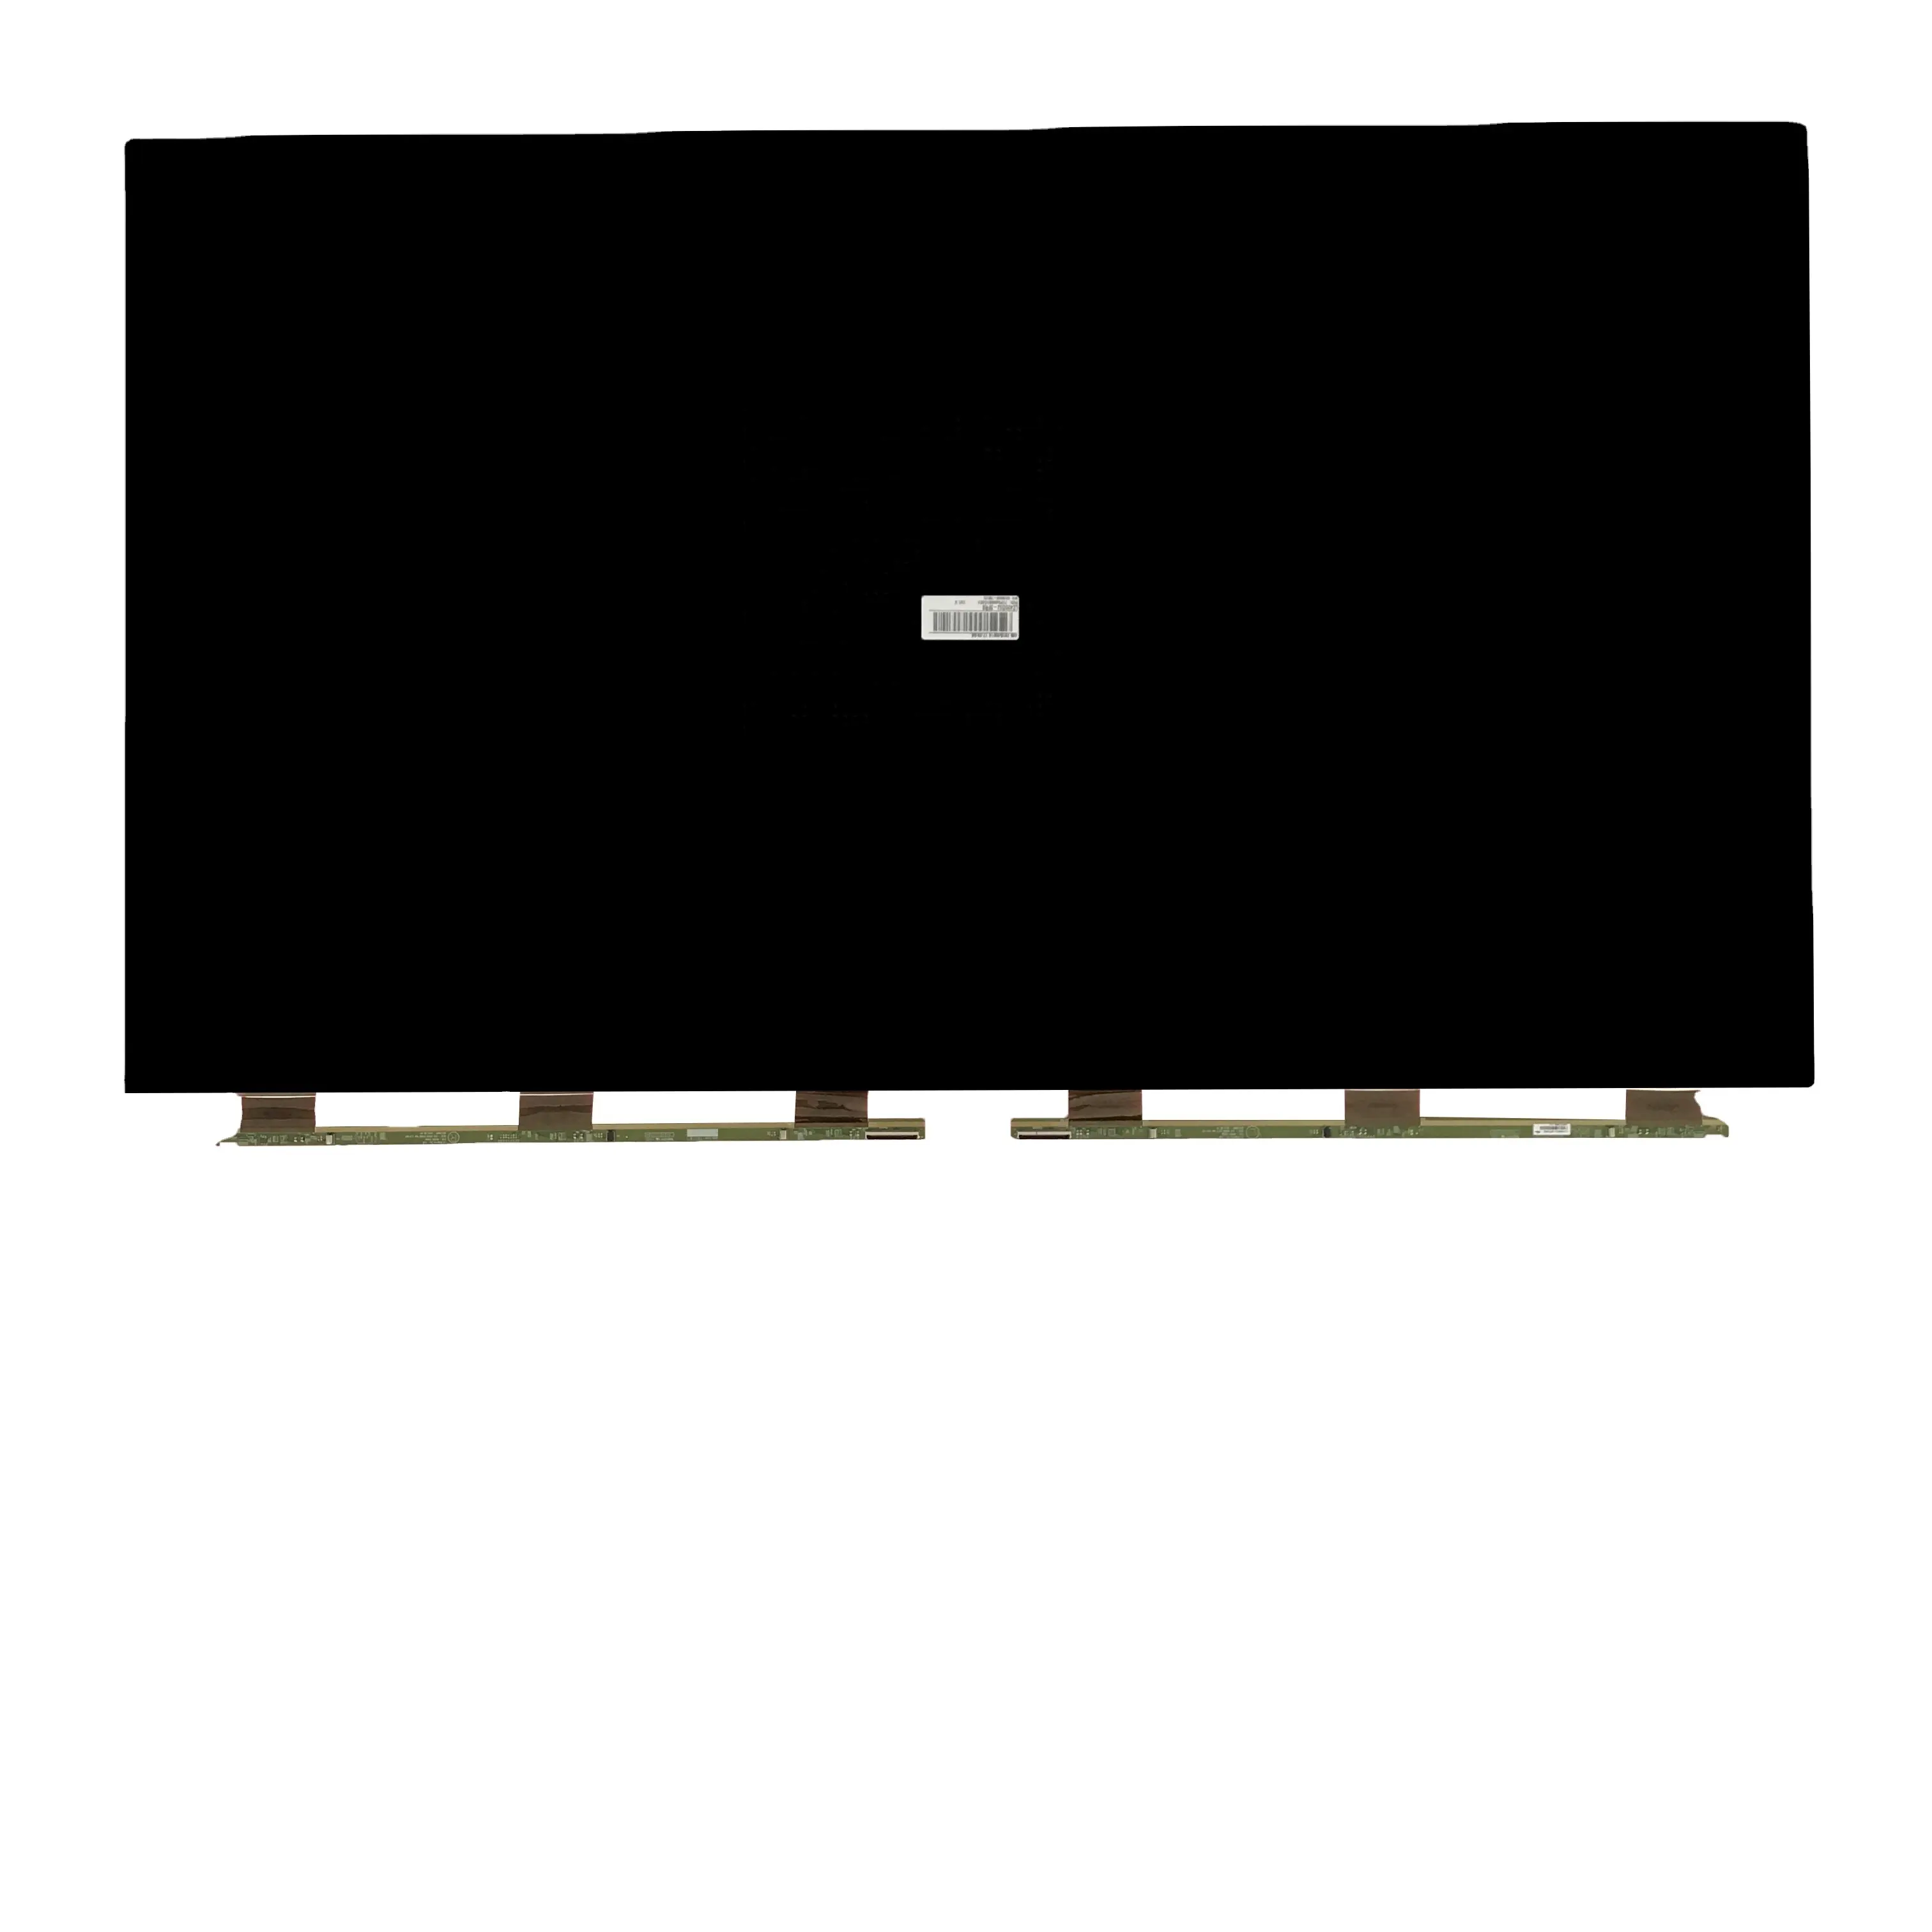 Chất lượng cao TV sets tn/STN LCD & TFT di động sản phẩm LG 42 inch FHD lc420duj sfr3